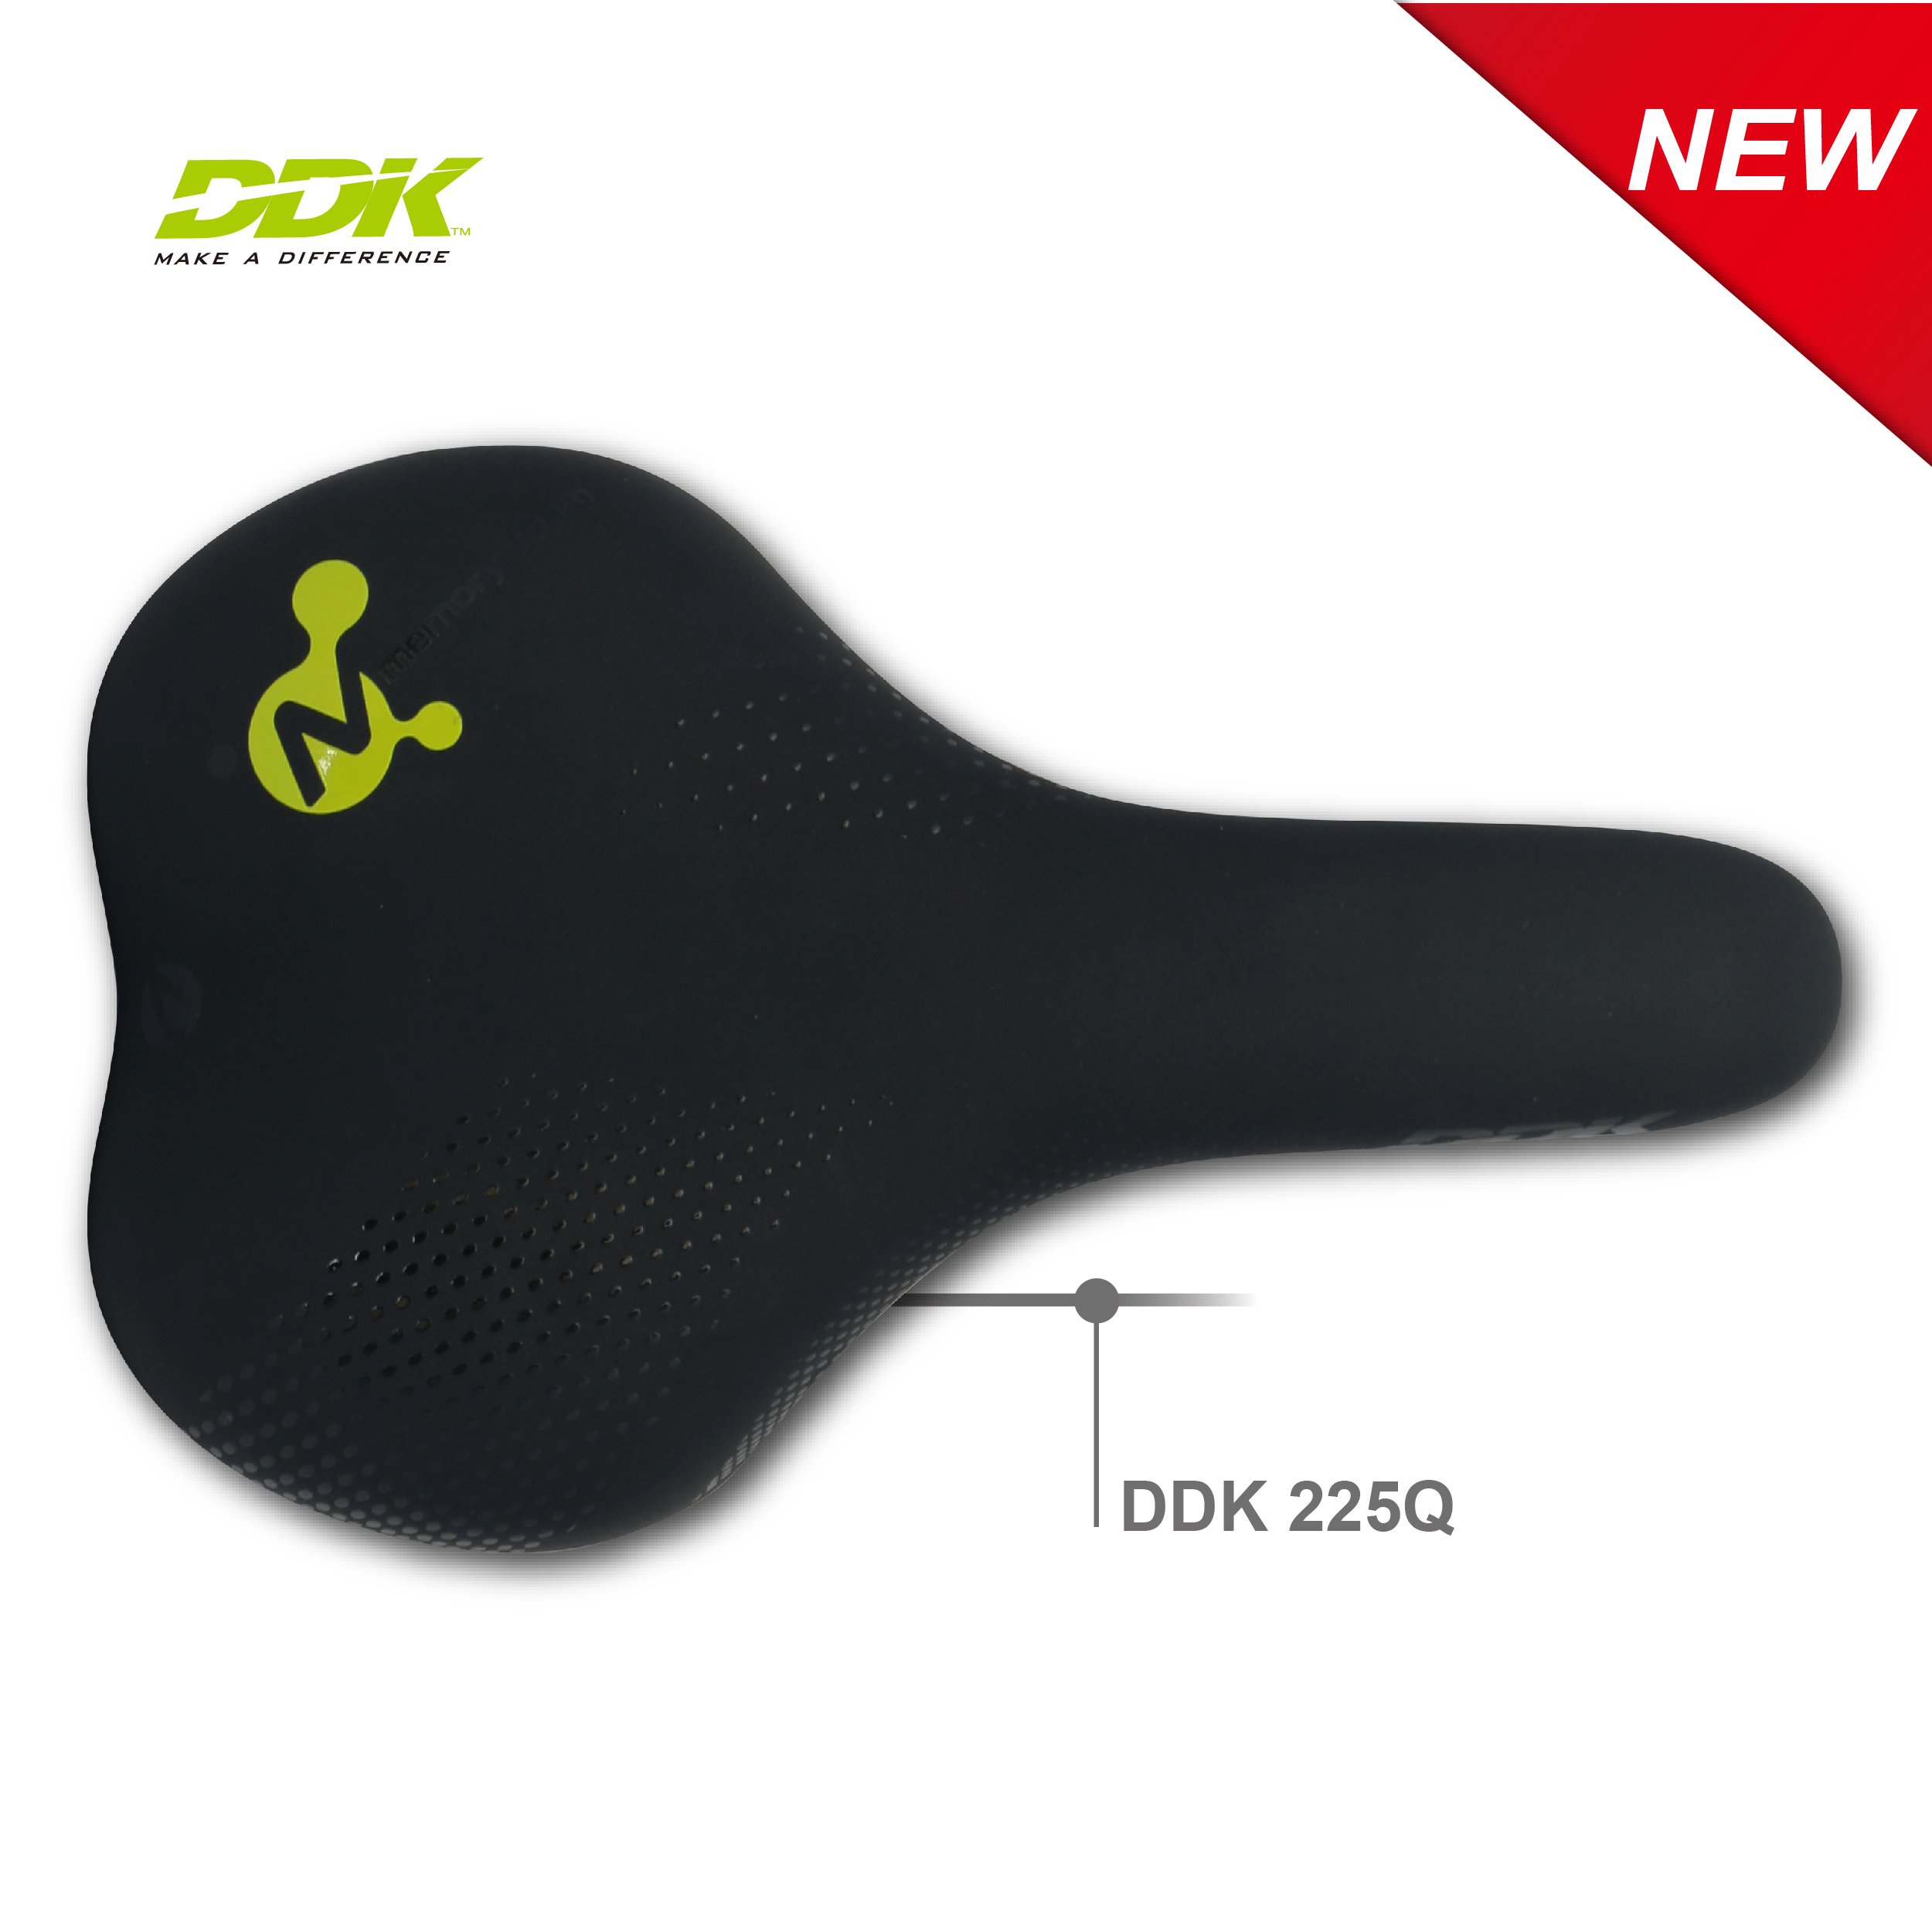 DDK-225Q